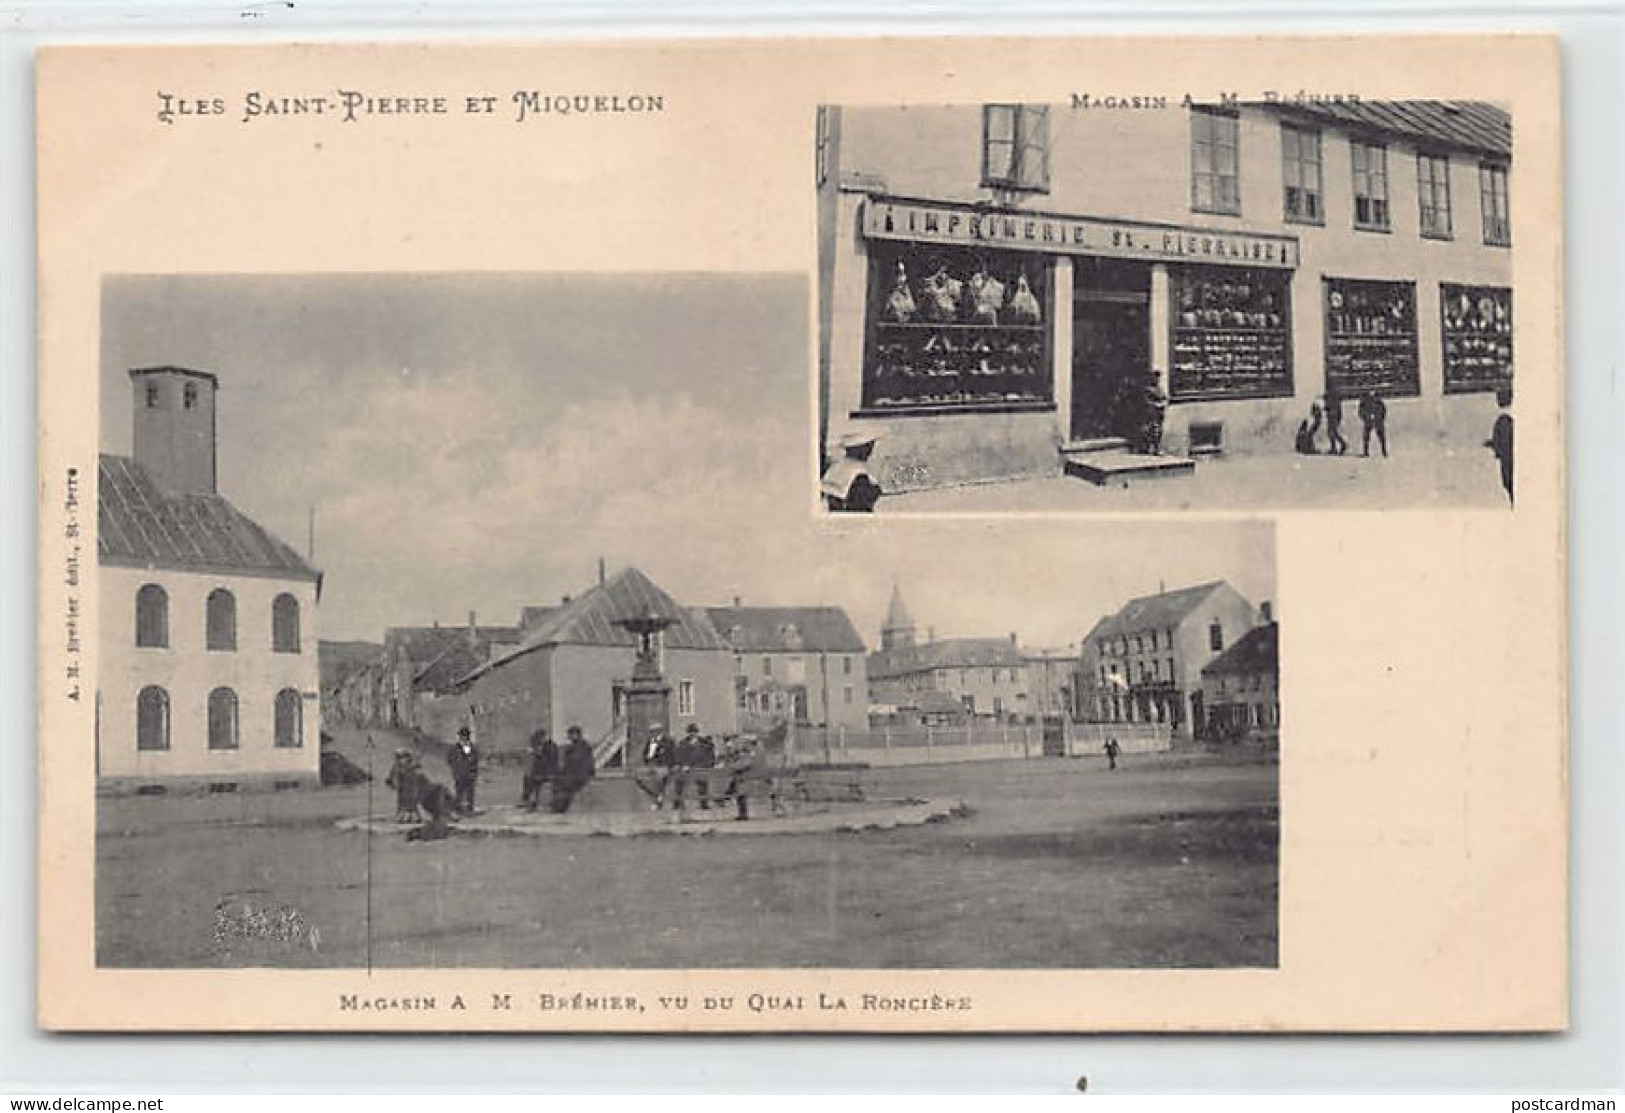 SAINT-PIERRE - Magasin A. M. Brehier, Vu Du Quai De La Roncière - CARTE PUBLICITAIRE - Ed. A. M. Bréhier  - Saint Pierre And Miquelon